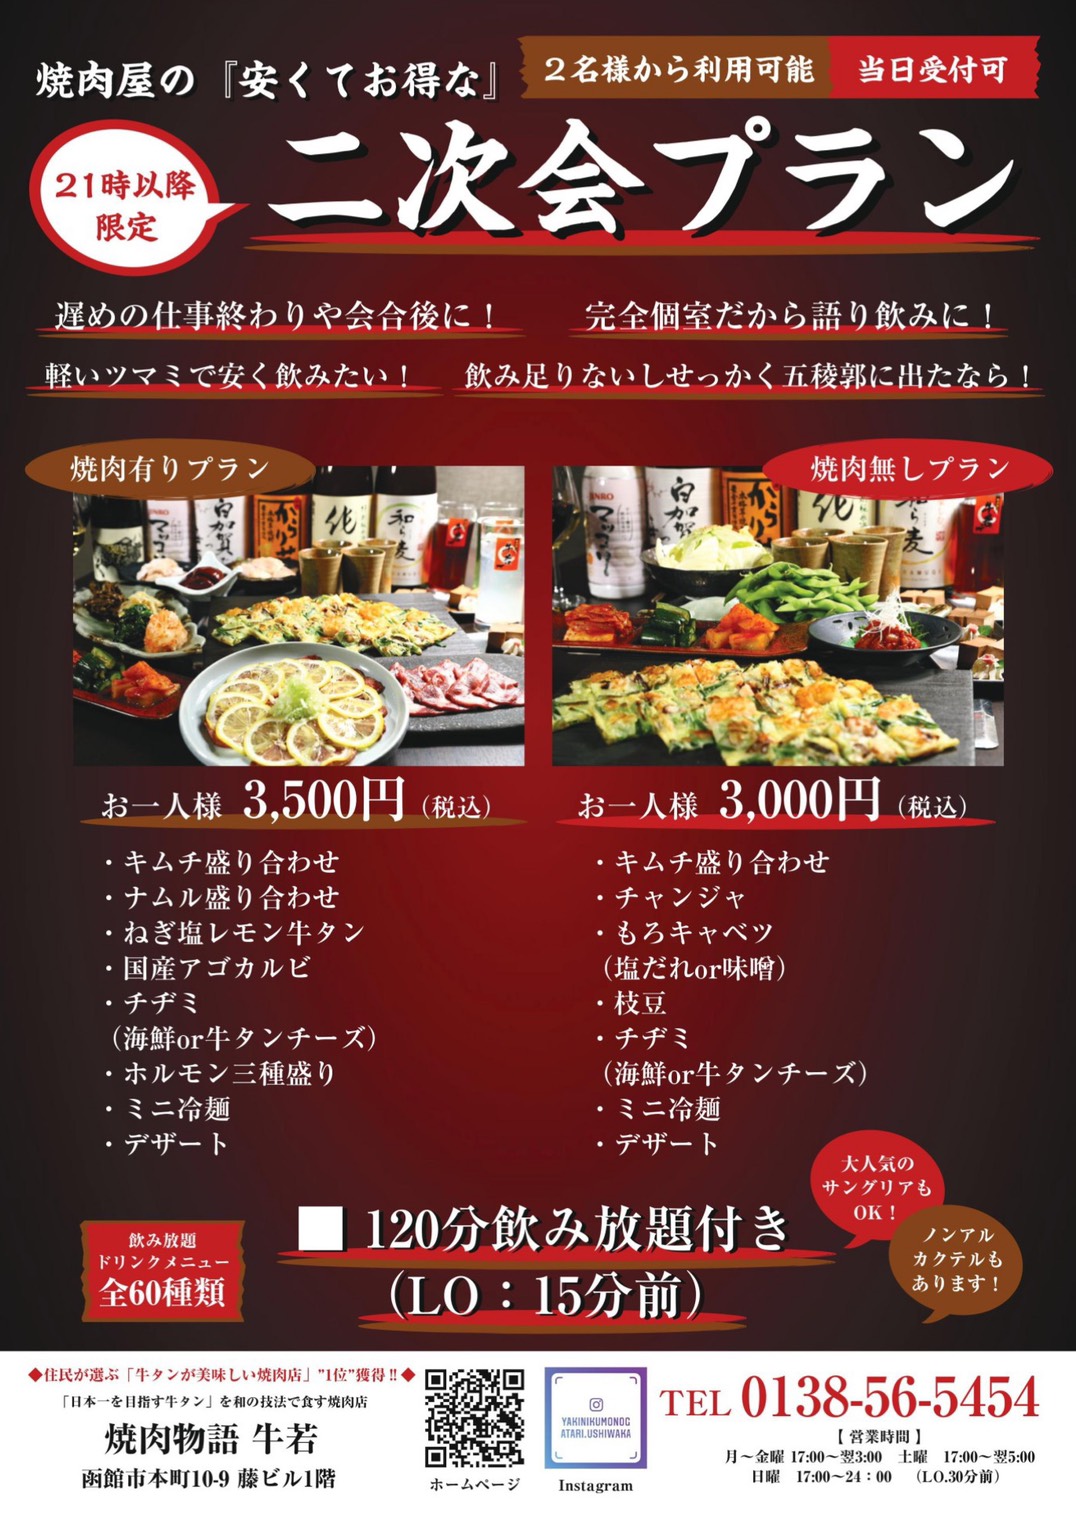 宴会メニュー 焼肉物語 牛若 北海道函館市で 牛タン日本一 を目指す焼肉店